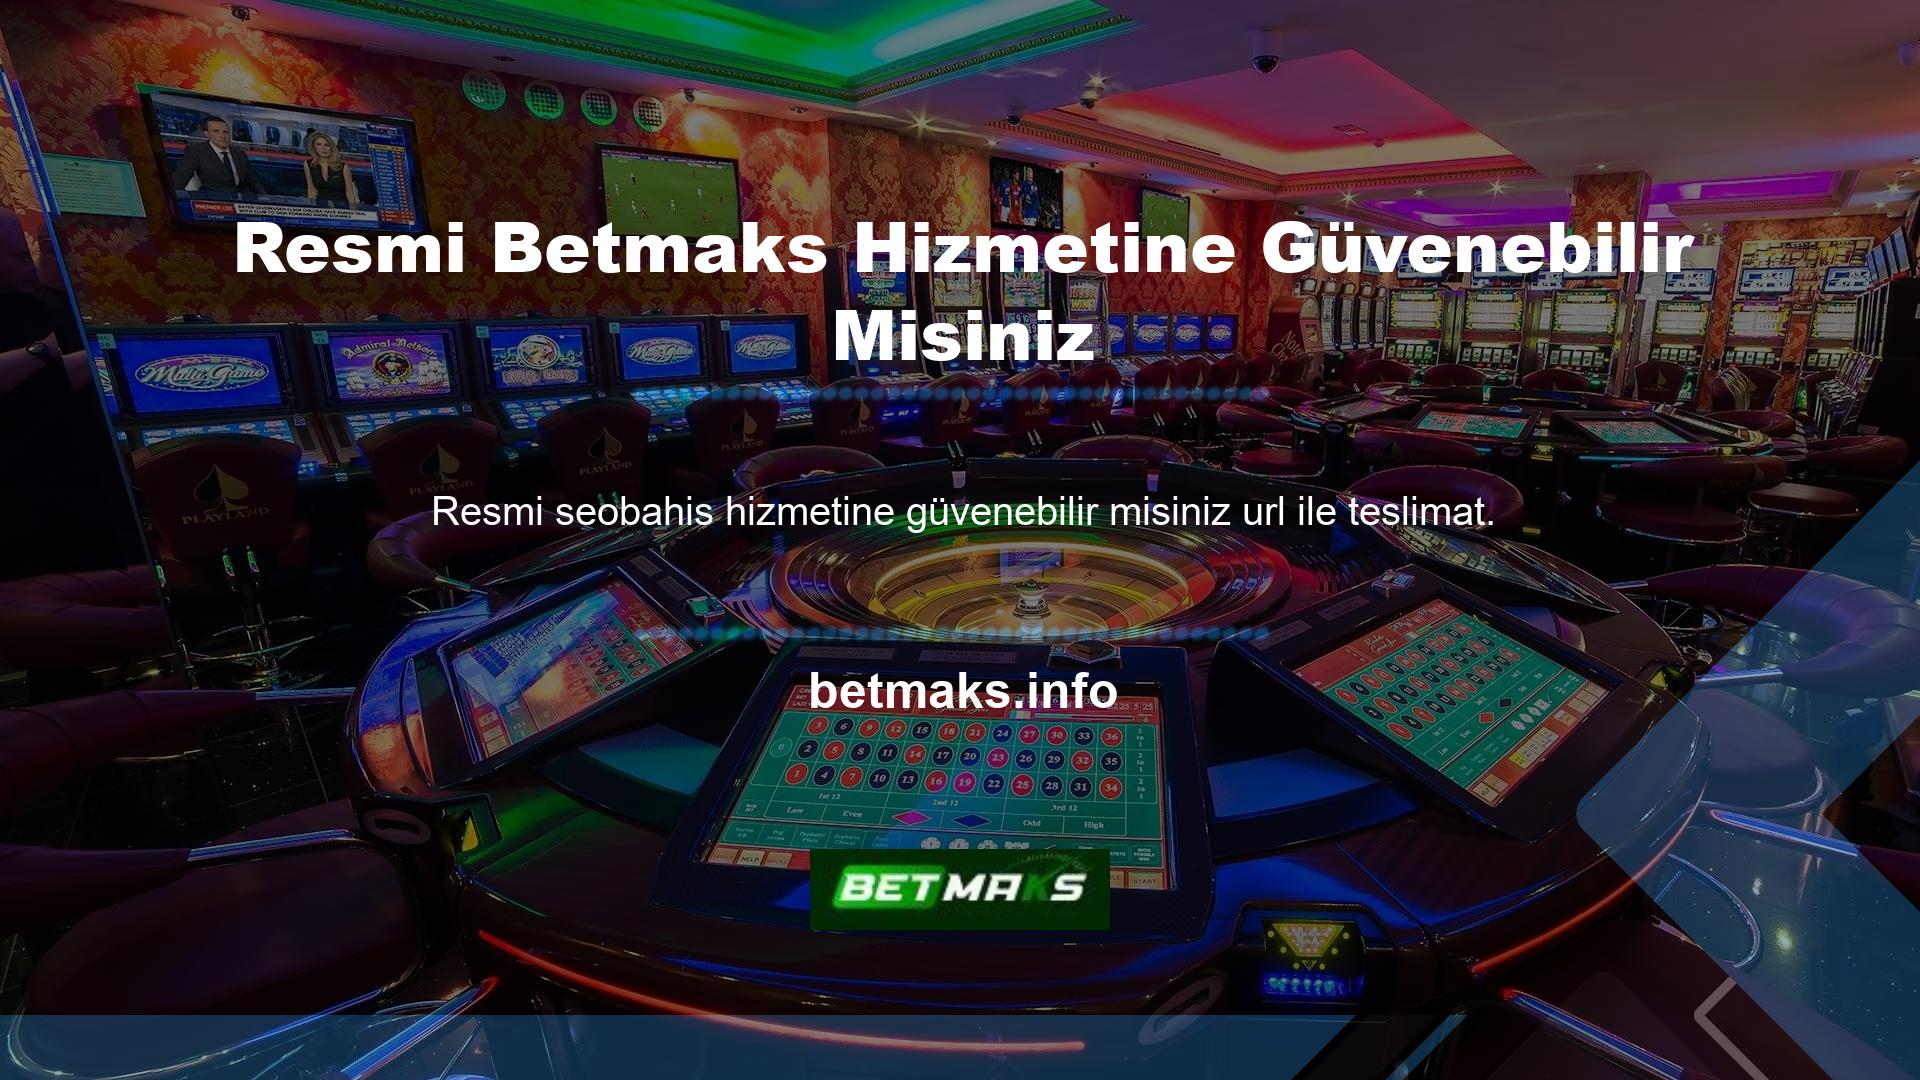 Aynı zamanda resmi Betmaks hizmeti, özellikle Türk kullanıcılar için düzenli olarak güncellenen bir giriş adresi sistemi sunmaktadır, bu sayede uyarılar göz ardı edilebilir